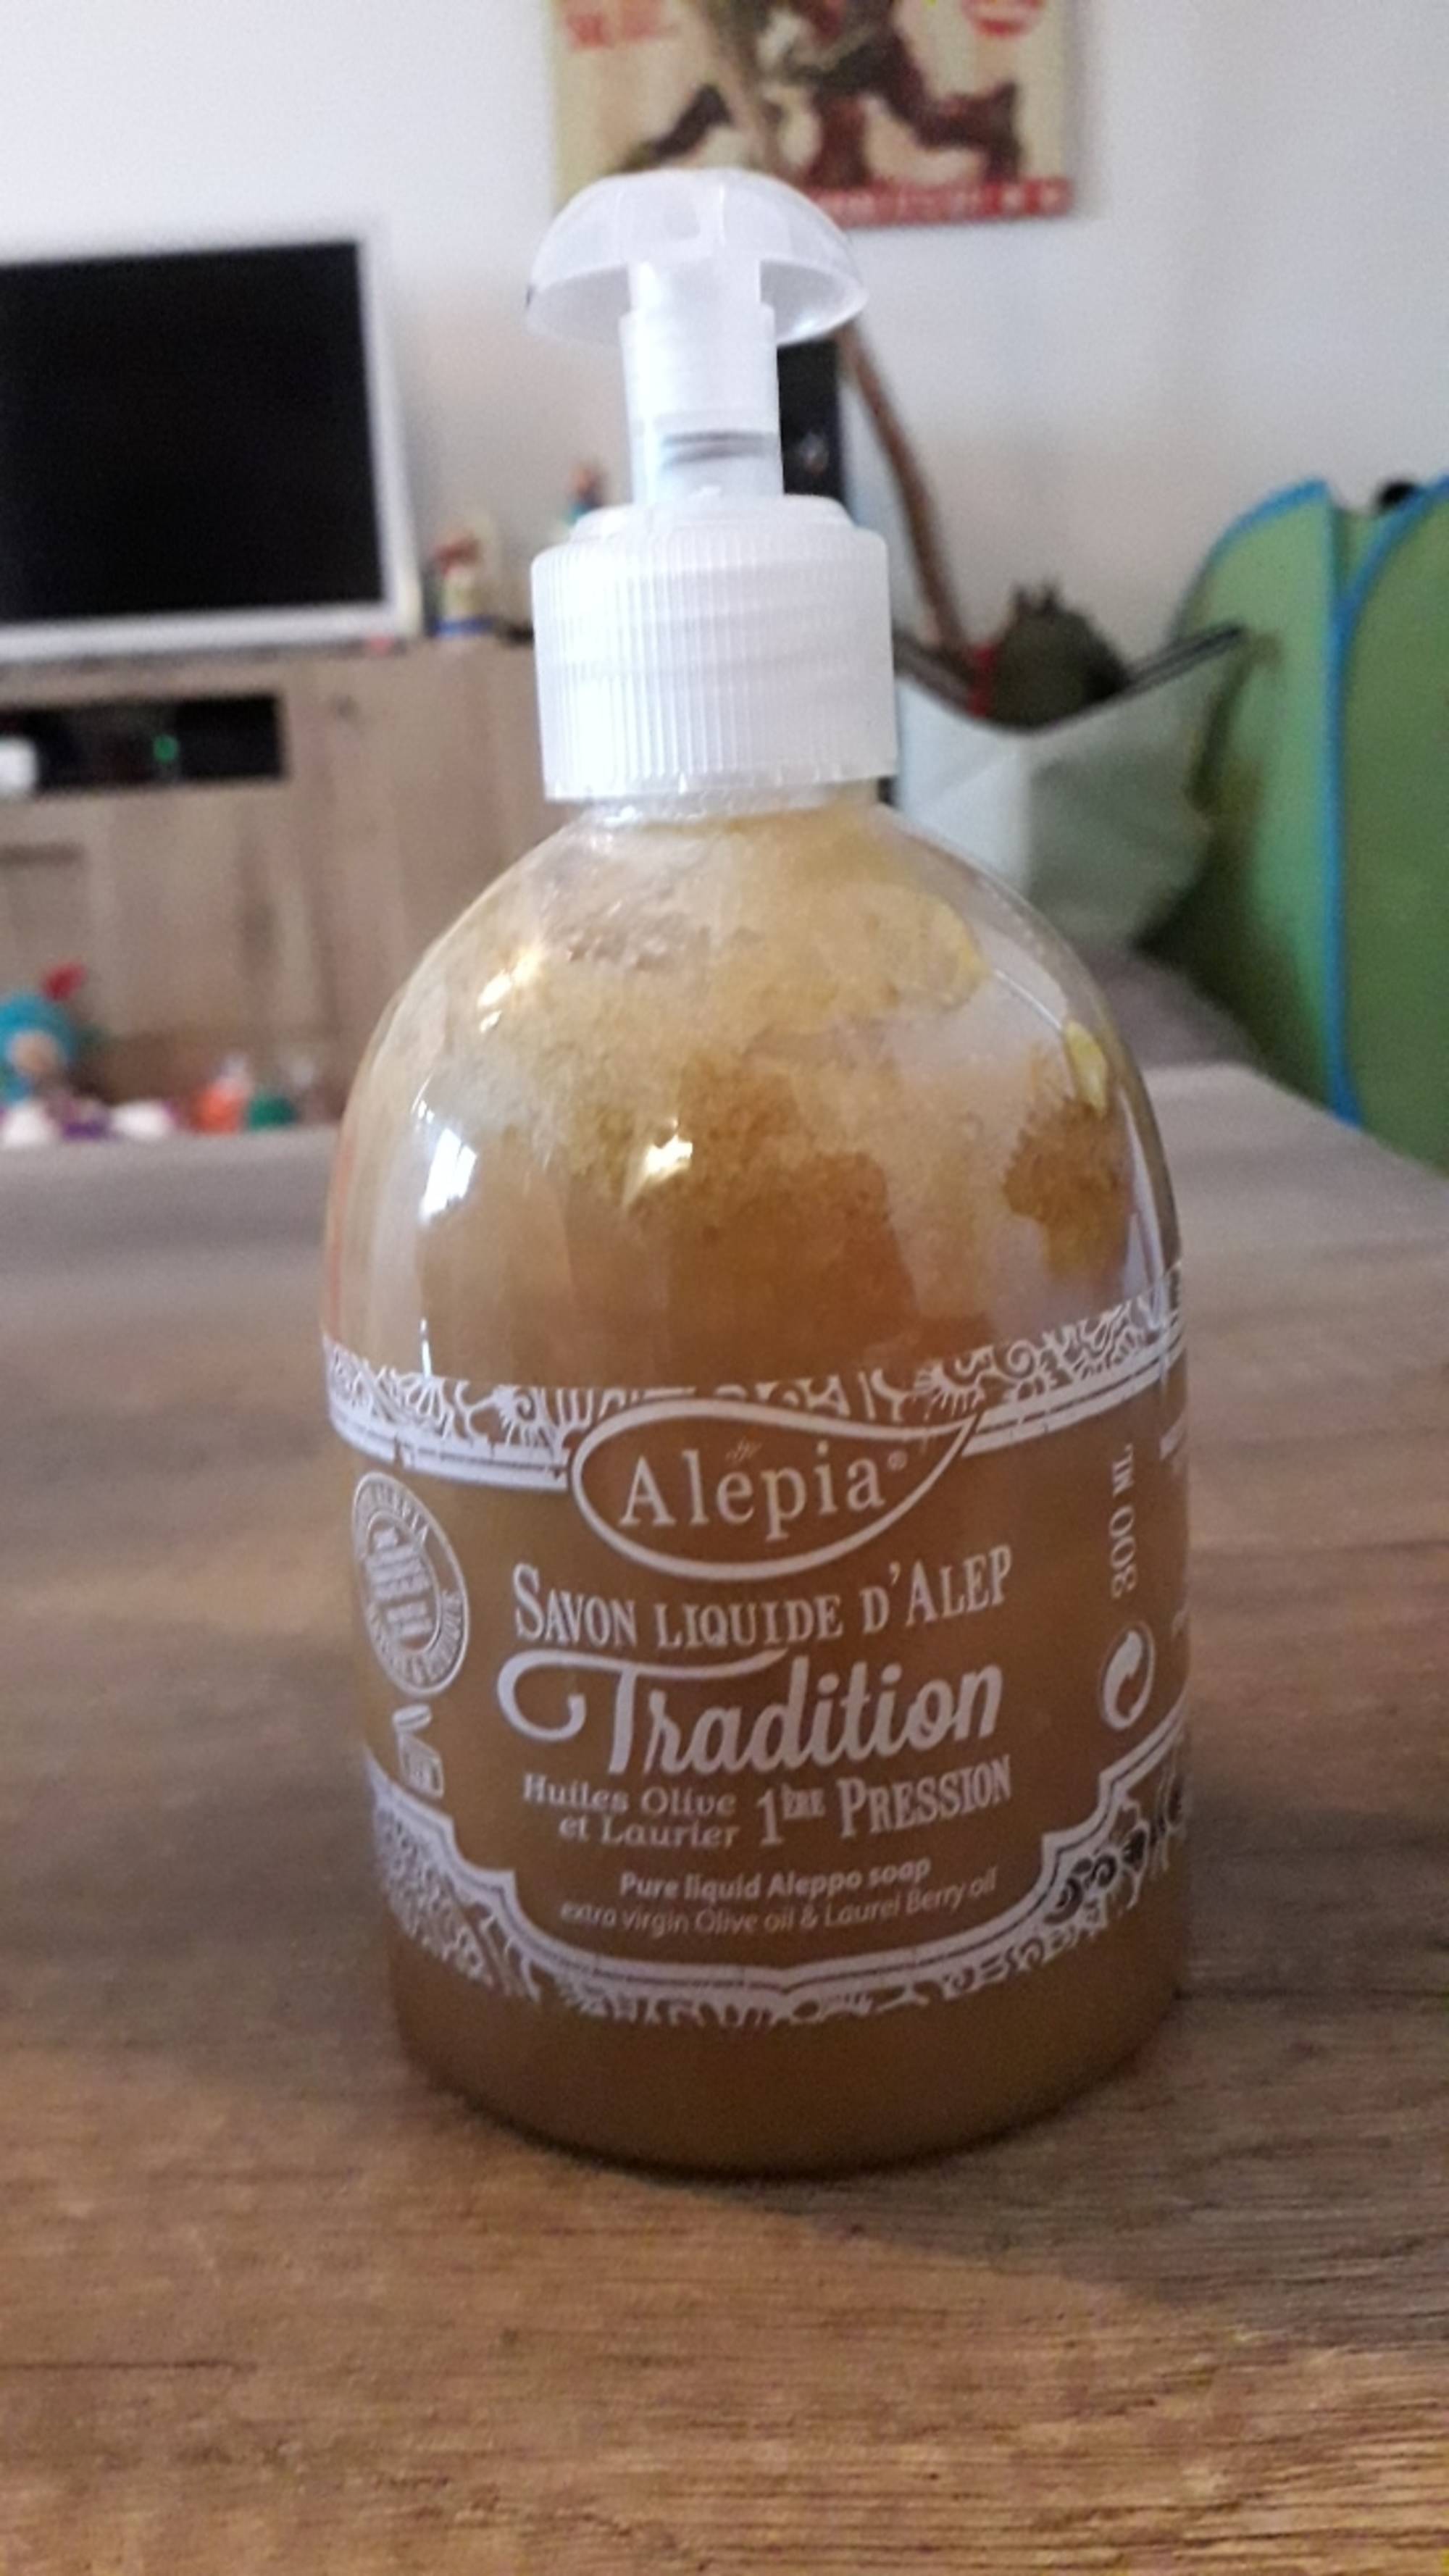 ALEPIA - Tradition - Savon liquide d'Alep